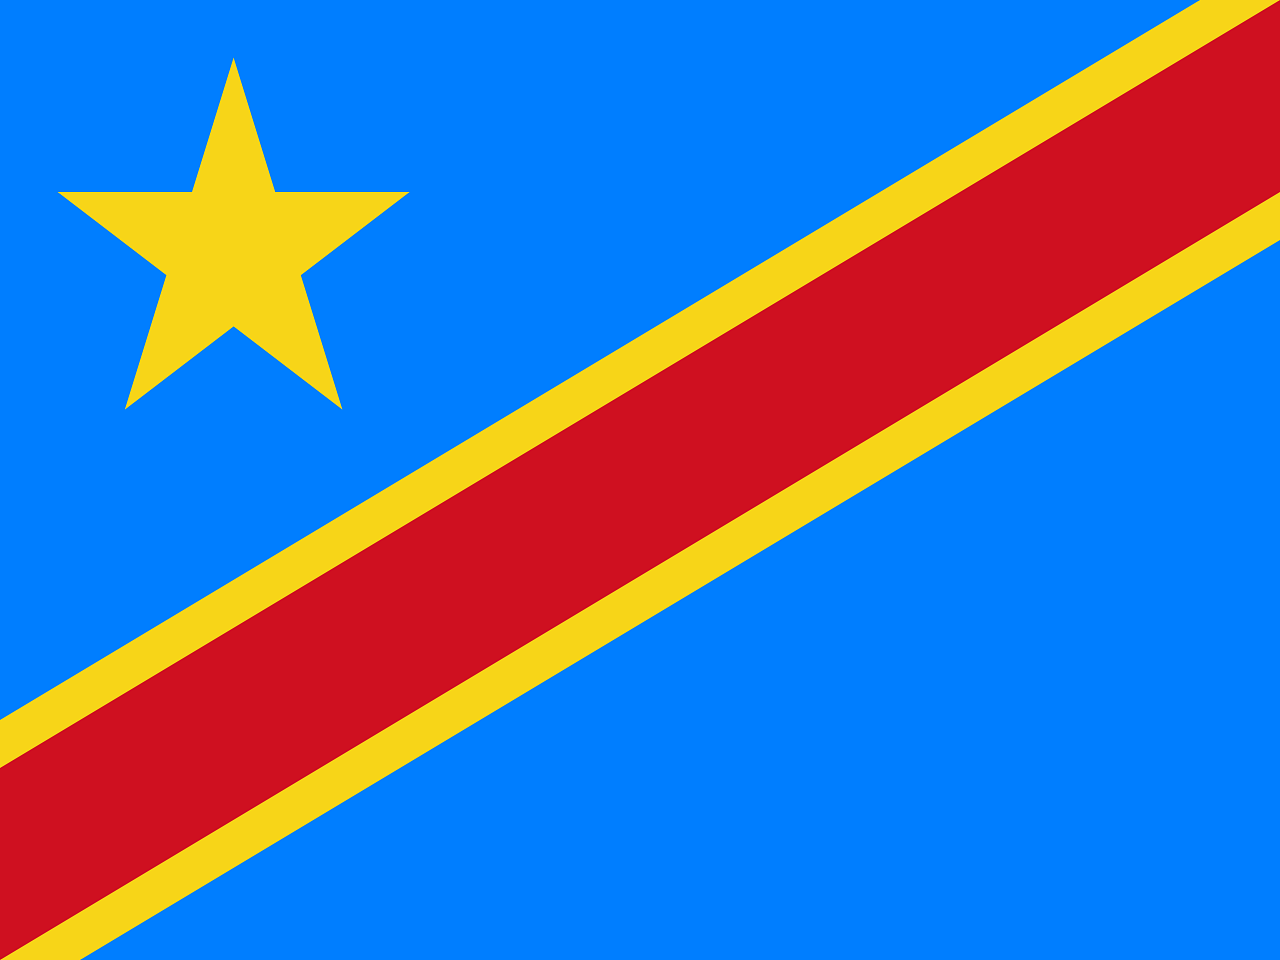 Democratic Republic of the Congo's flag (Wikipedia Photo)